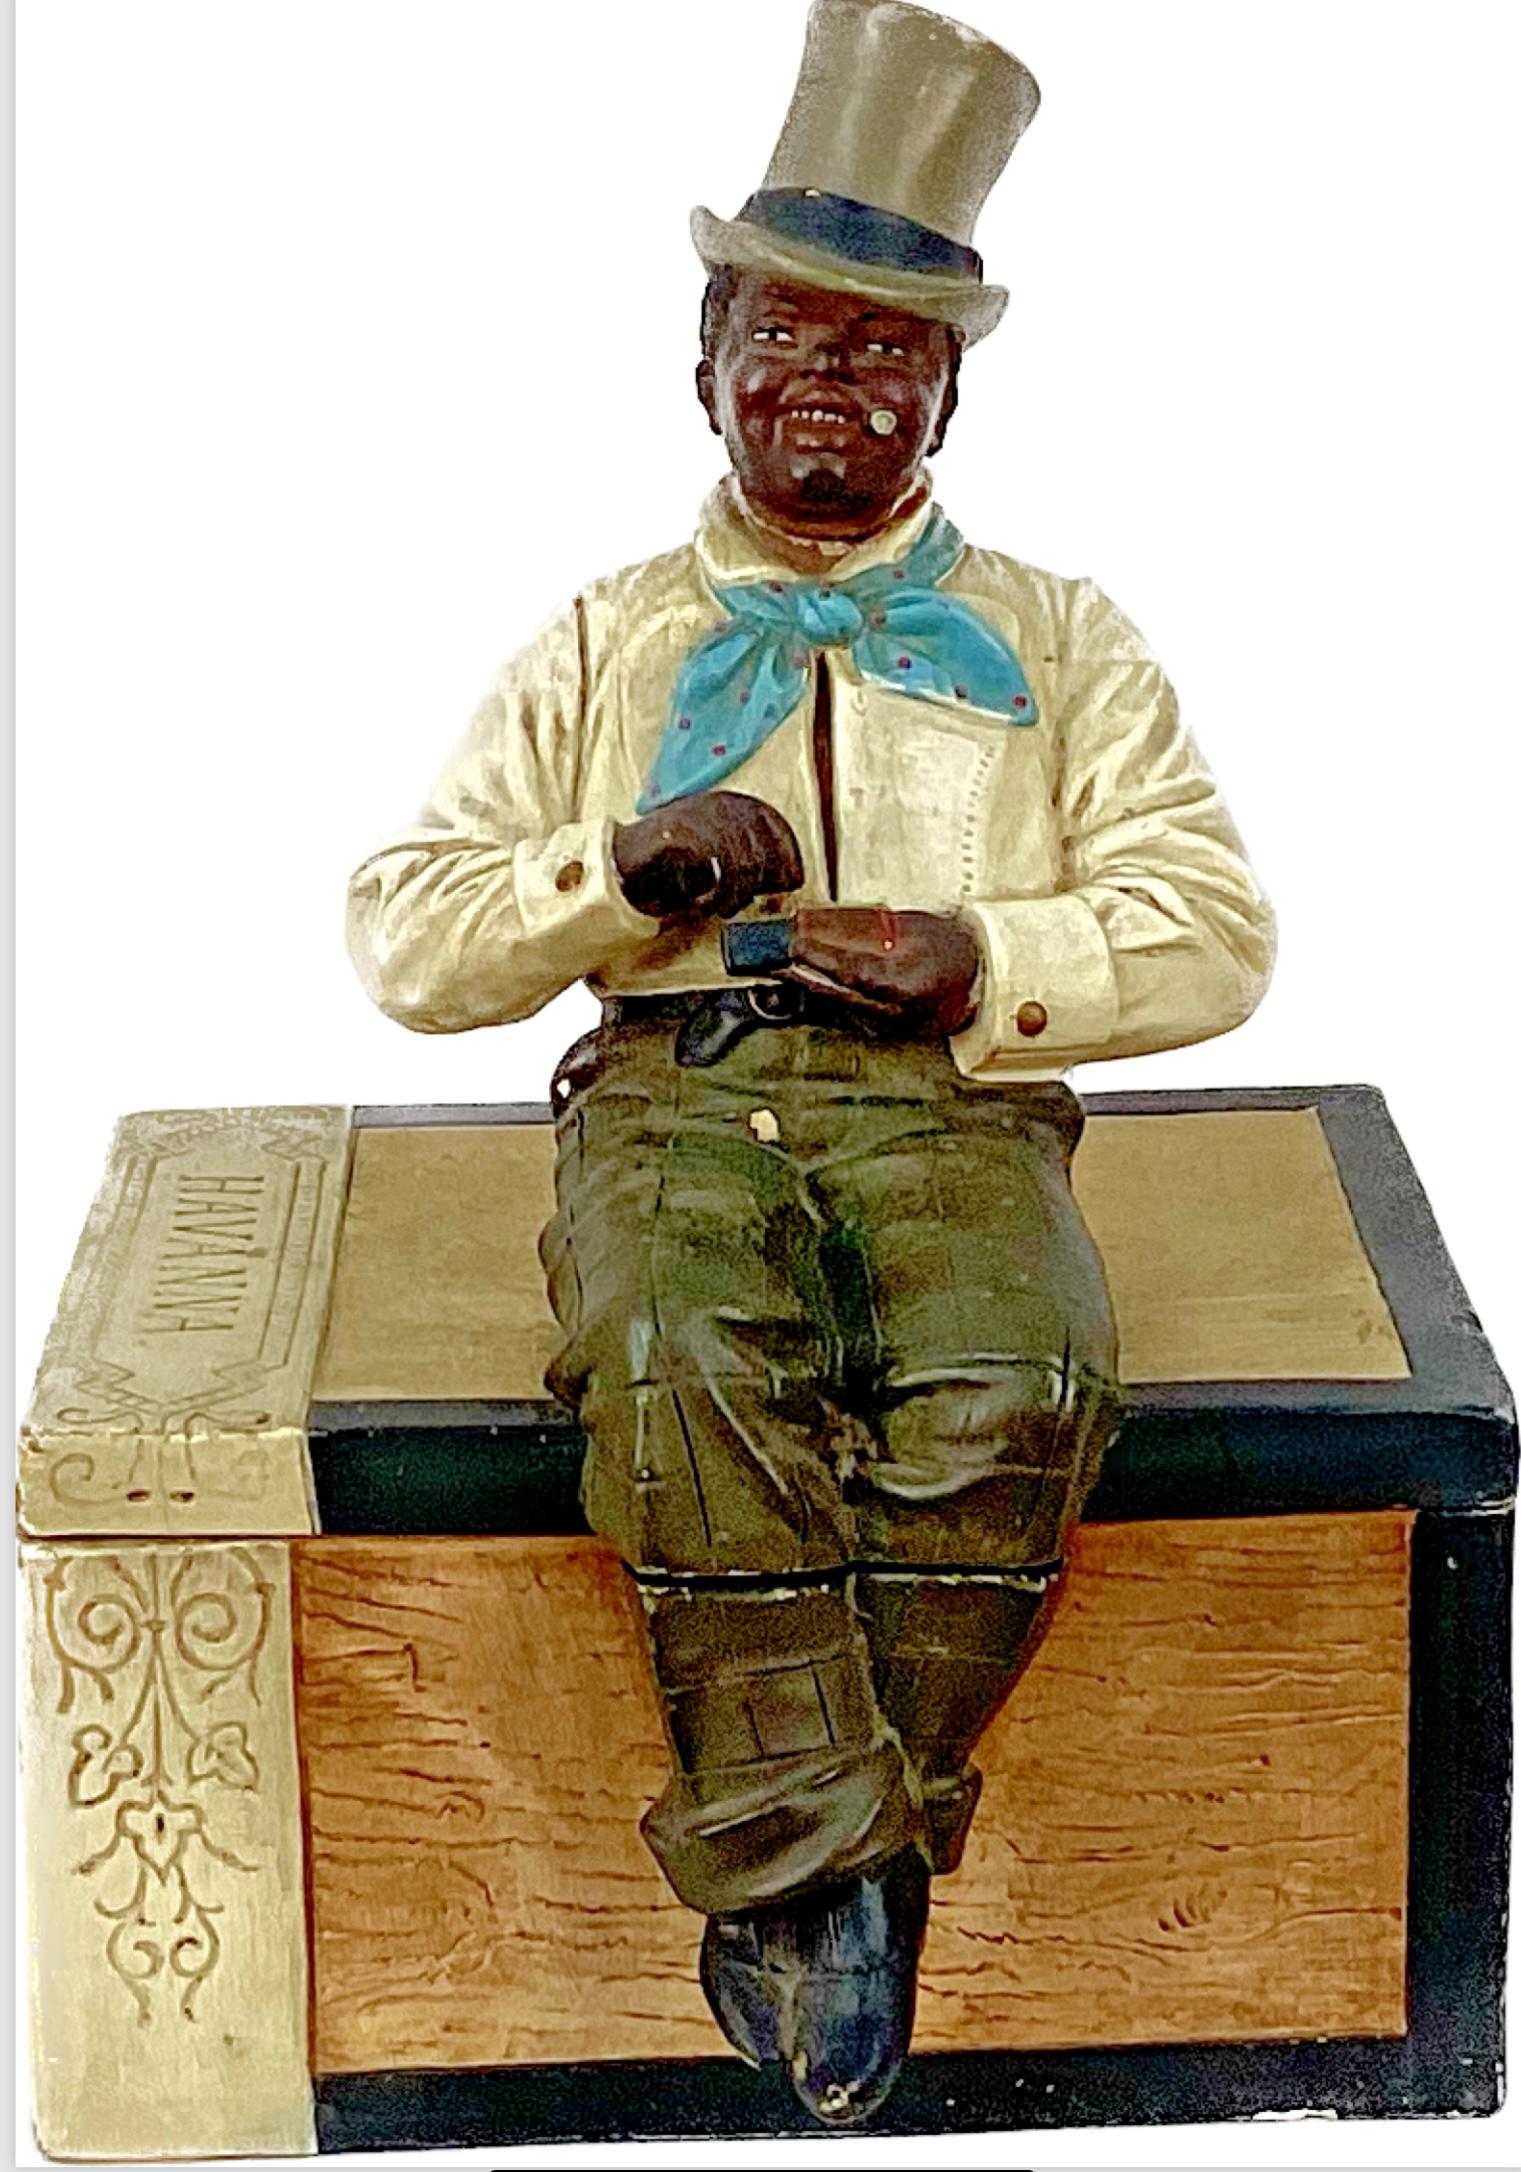 Pot à cigares en céramique Black Man. Fabriqué en Autriche, vers 1900, sous la forme d'une boîte à cigares en bois. Un homme noir élégamment vêtu et coiffé d'un haut-de-forme est assis sur le couvercle, une boîte d'allumettes à l'ancienne dans les